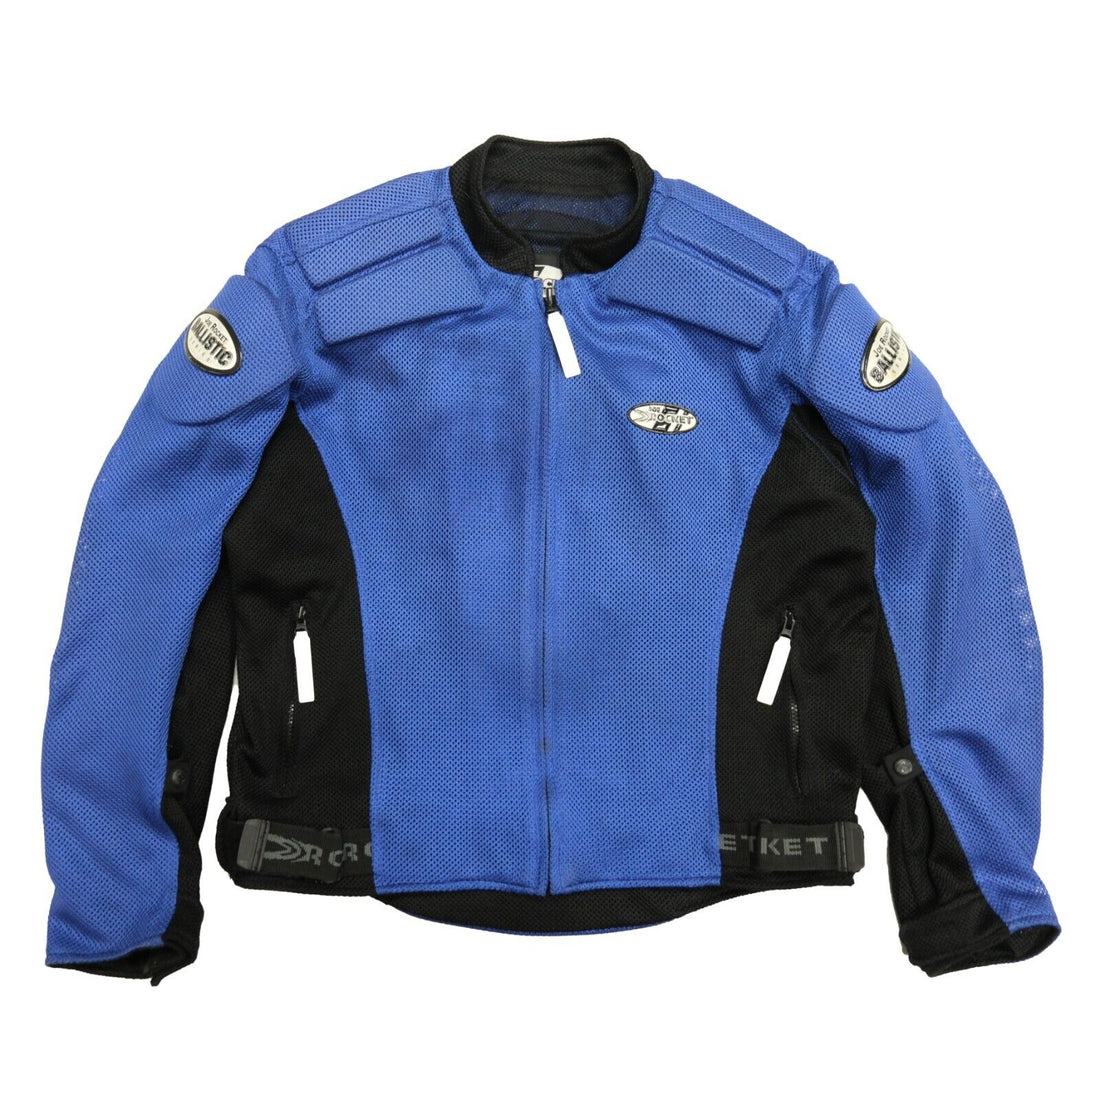 Vintage Joe Rocket Ballistic Motorcycle Jacket Size Large Blue Touring